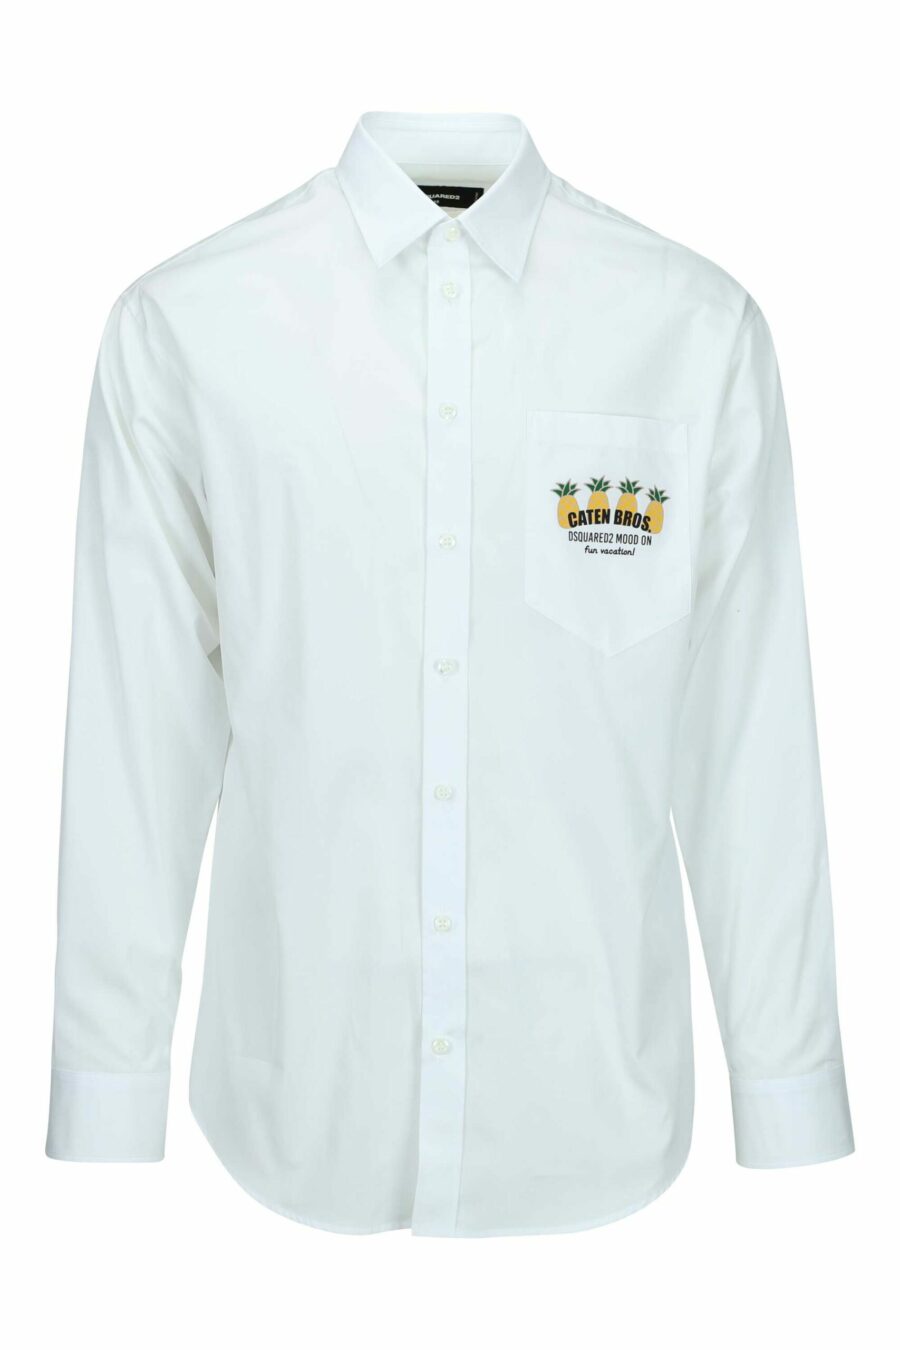 Weißes Hemd mit Ananas-Mini-Logo - 8054148528201 skaliert